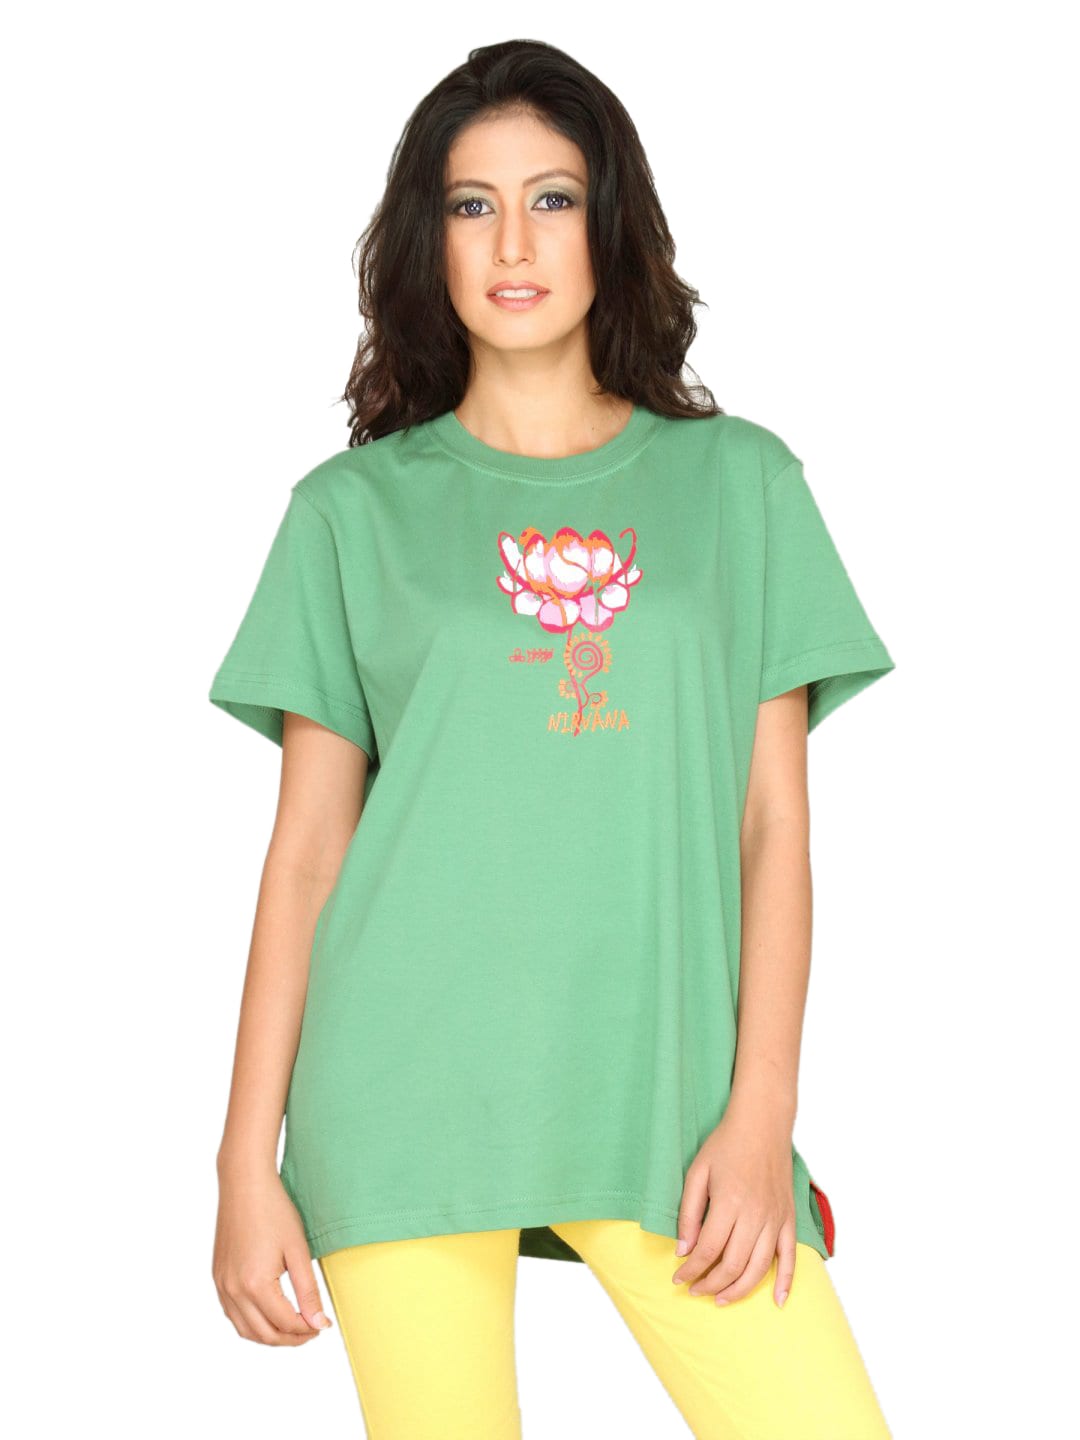 Urban Yoga Women's Green T-shirt